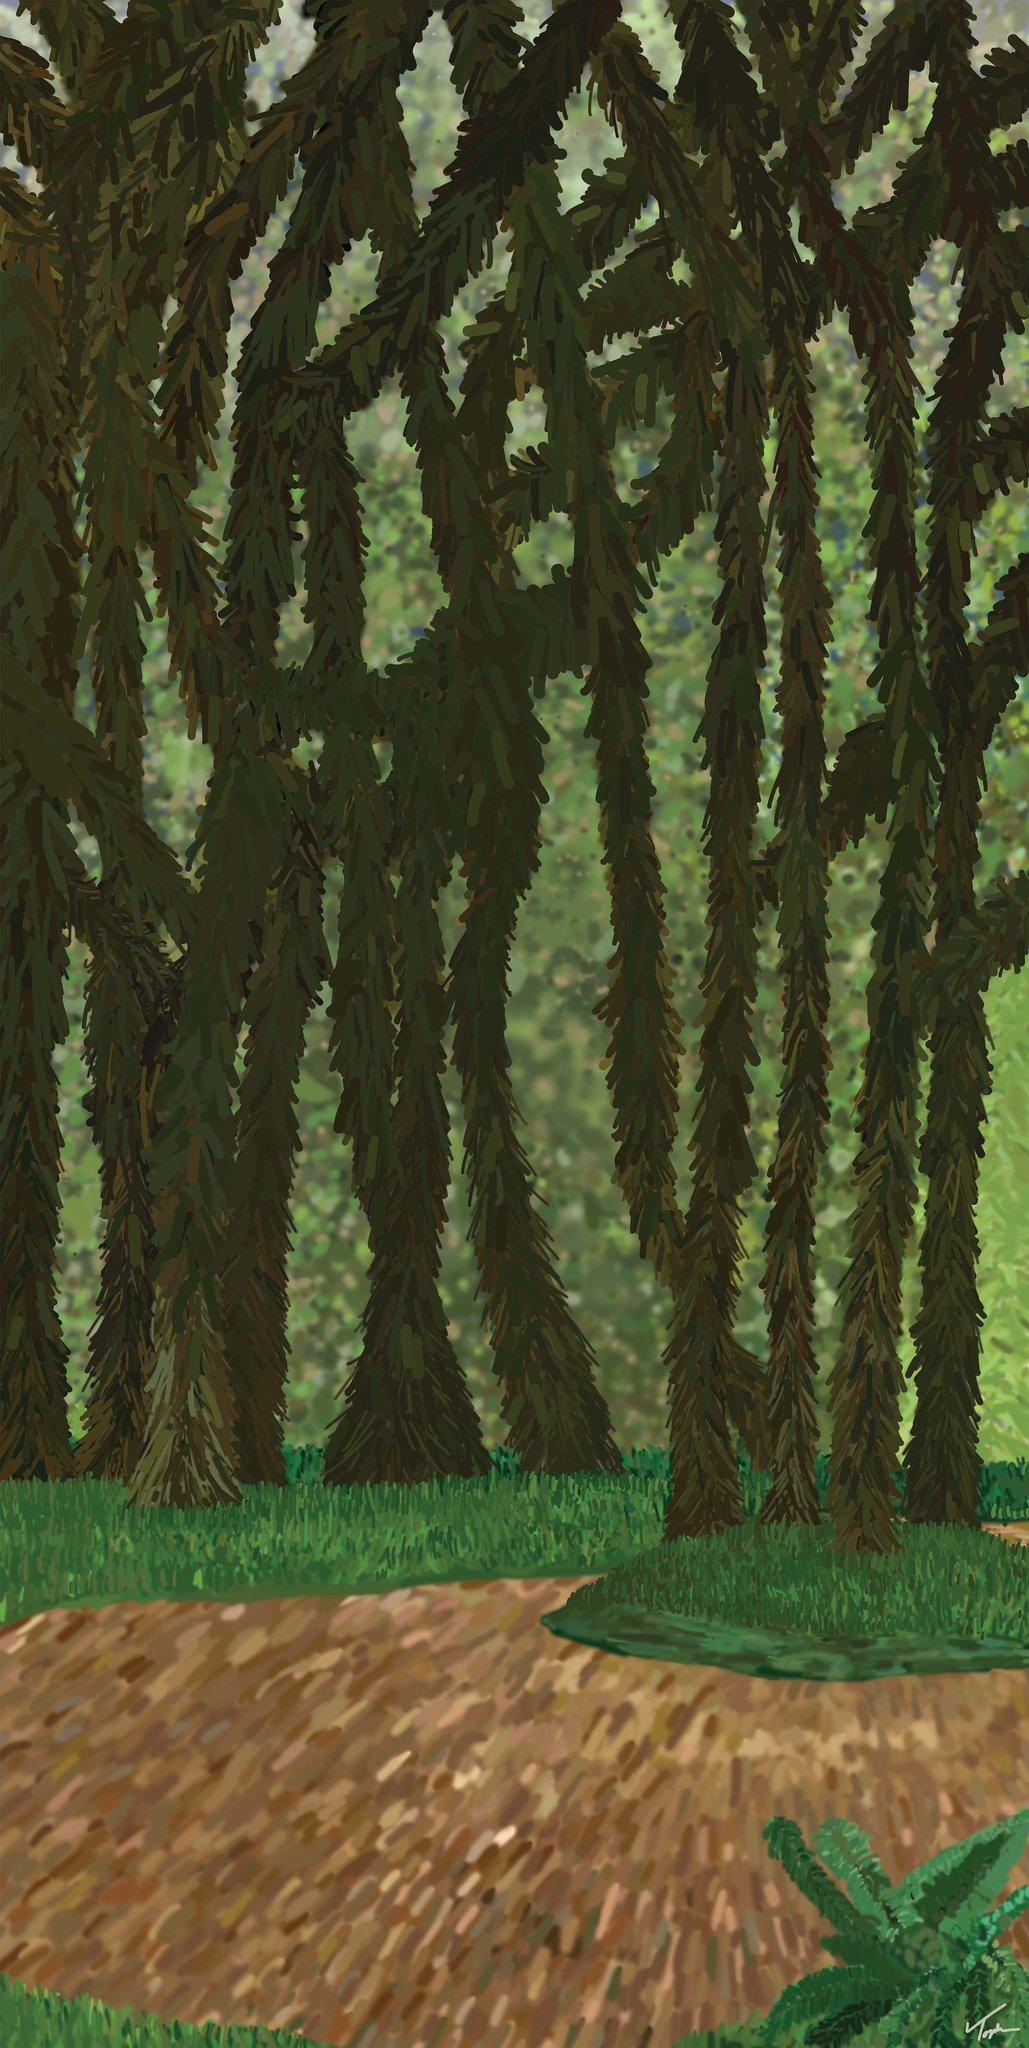 Landscape Painting Topher Straus - Enchanté, peinture impressionniste originale de la forêt, polymère acrylique sur métal